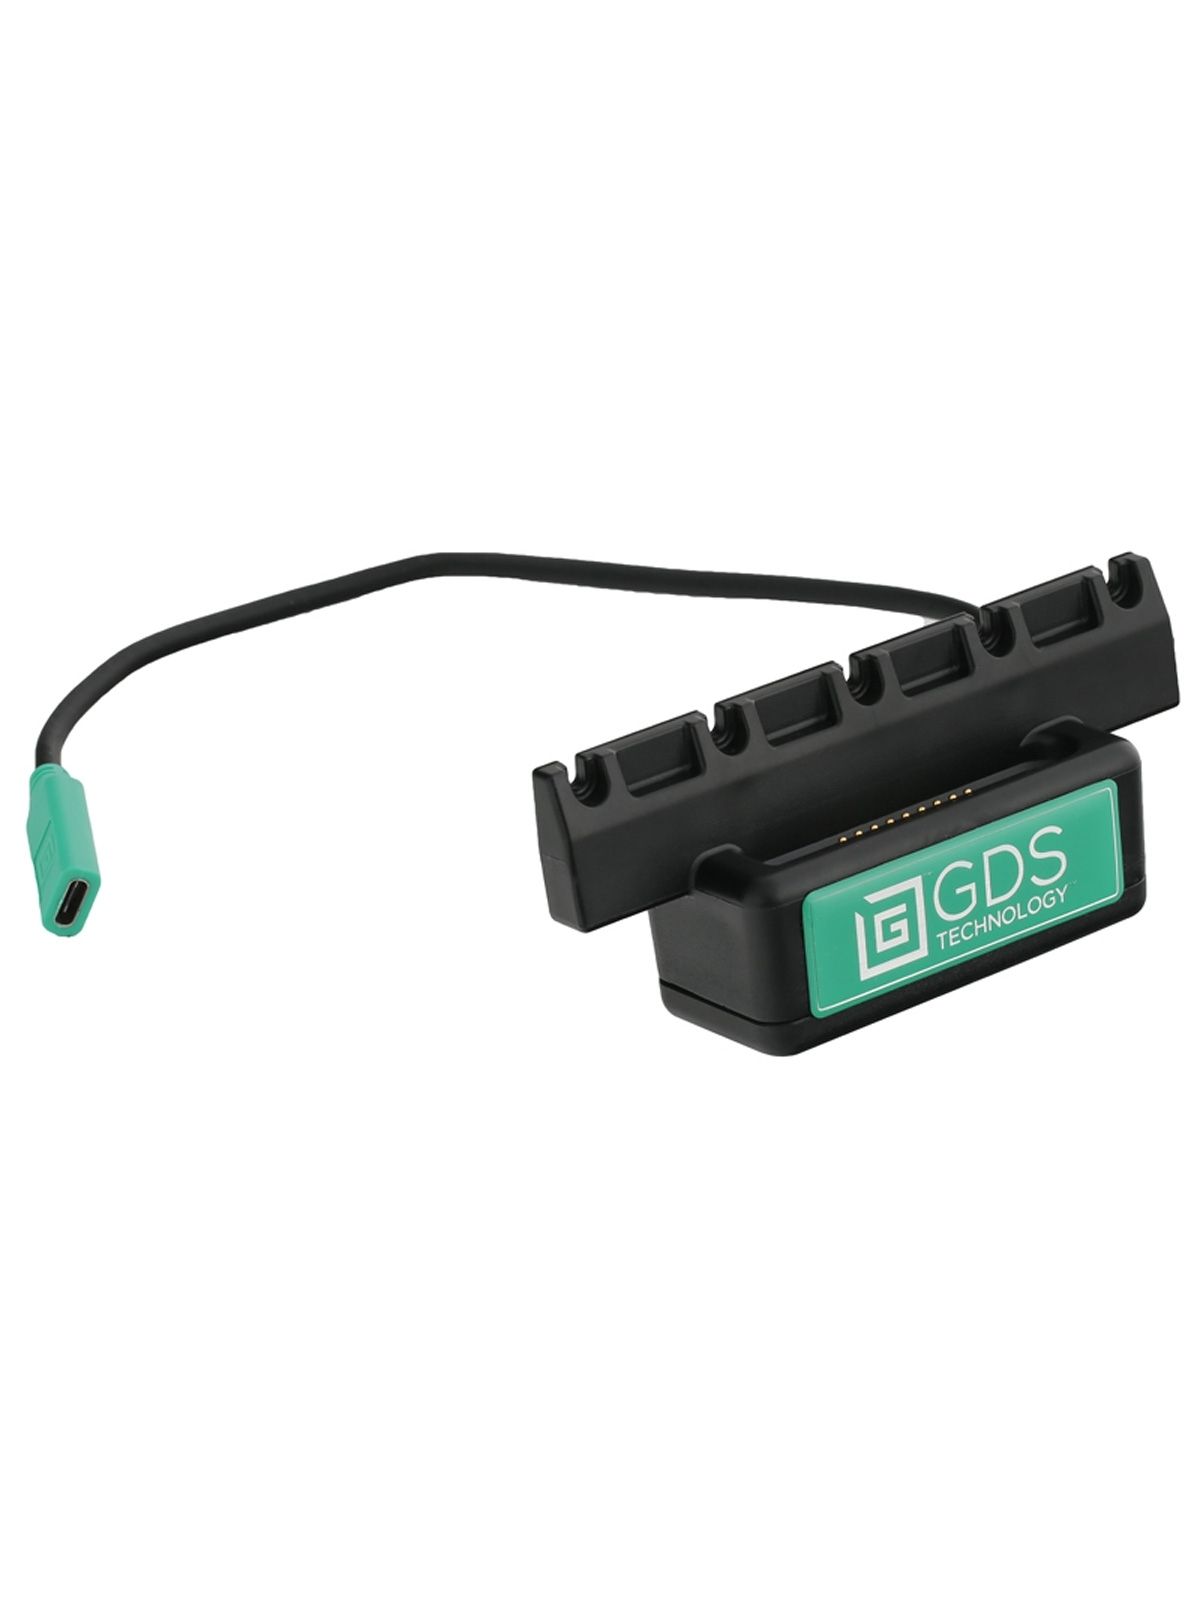 RAM Mounts GDS Ladesockel zum Upgrade von Tab-Tite- oder Tab-Lock-Halteschalen - USB-C Anschluss